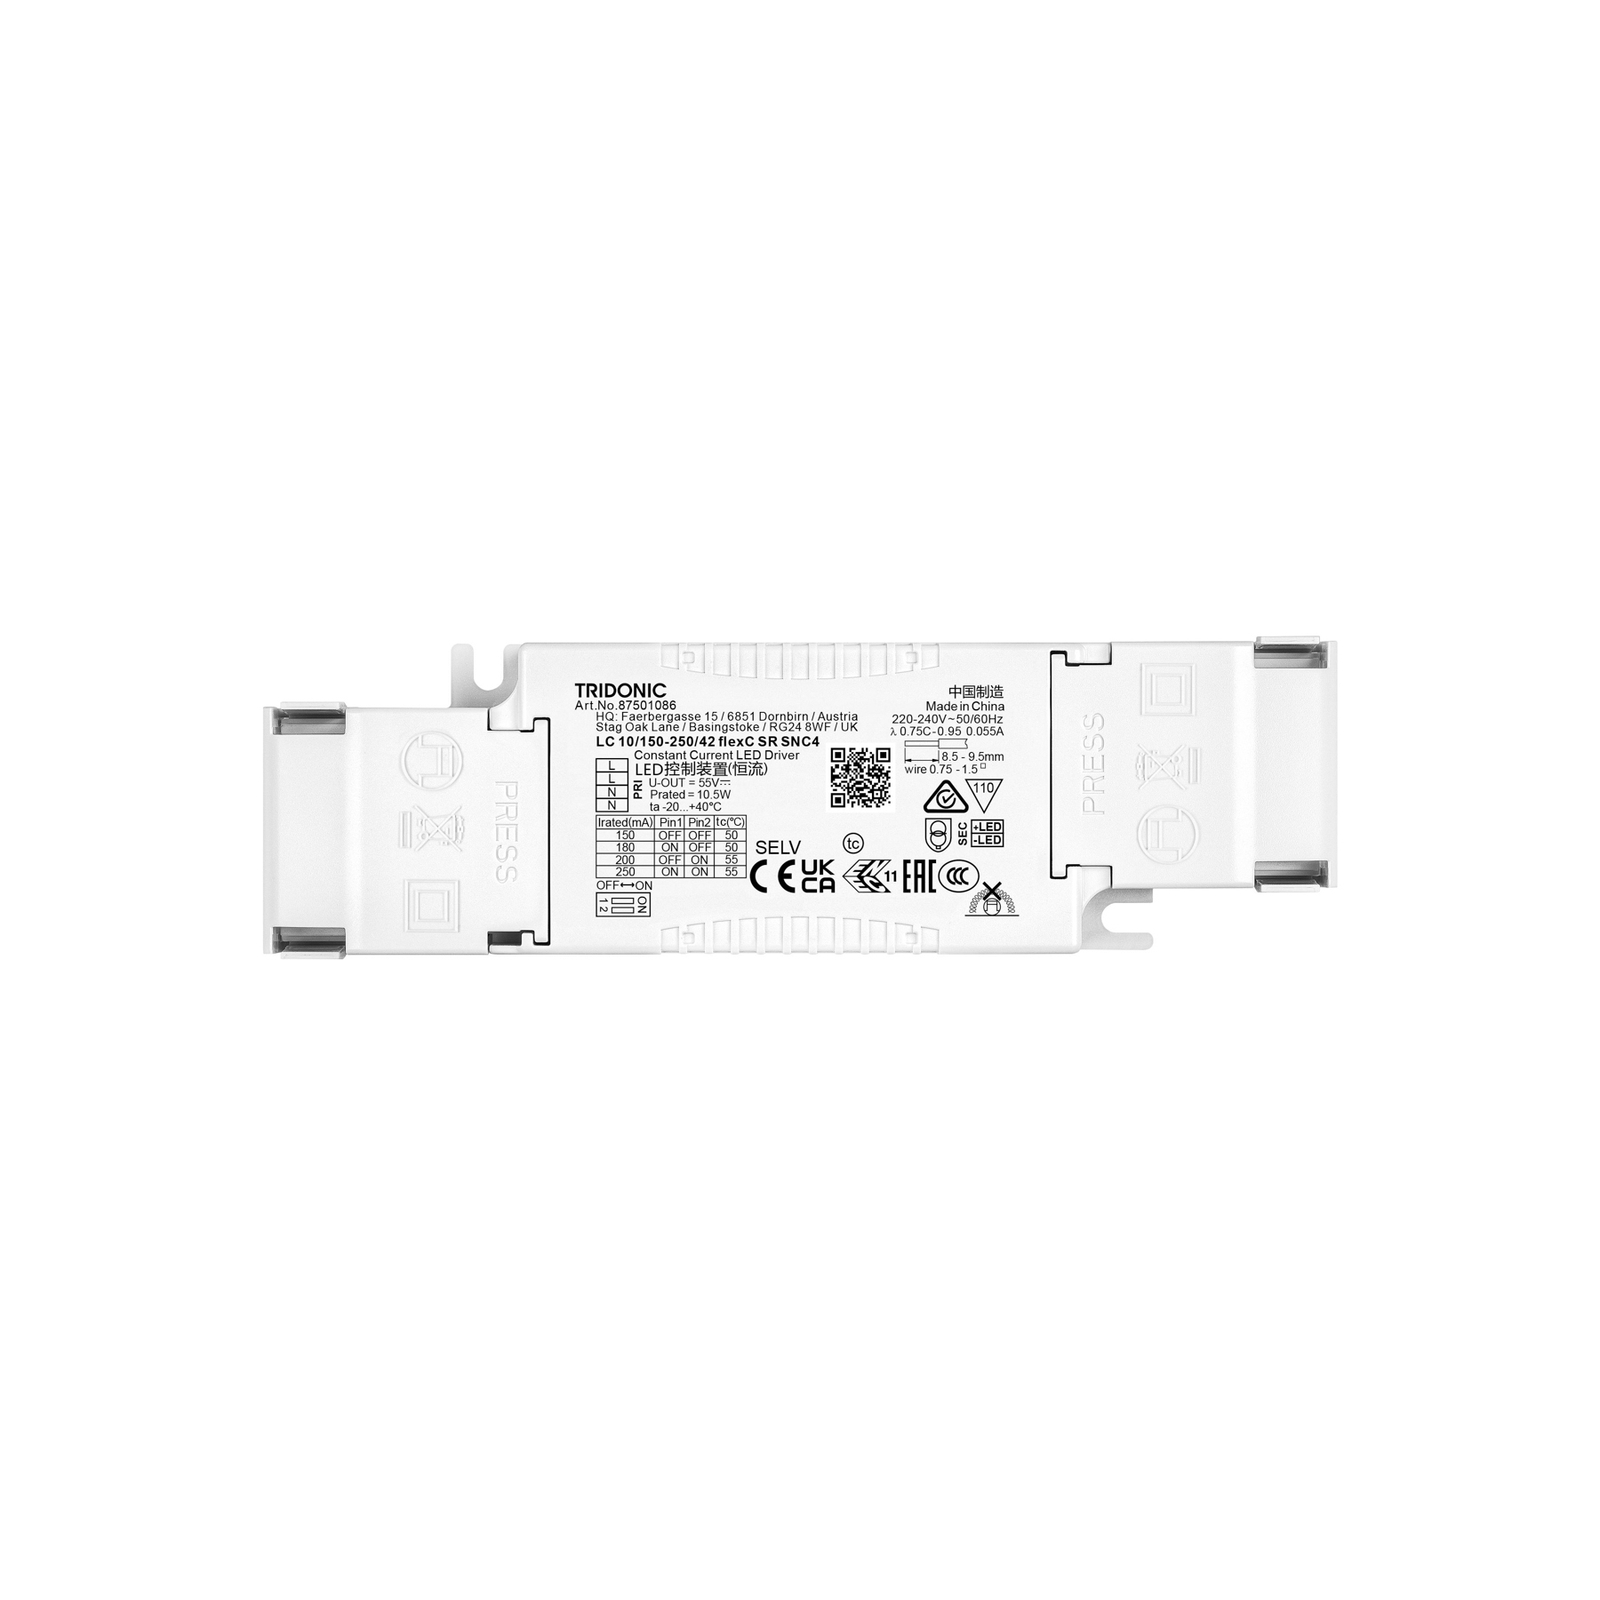 TRIDONIC LED kompaktne juht LC 10/150-250/42 flexC SR SNC4